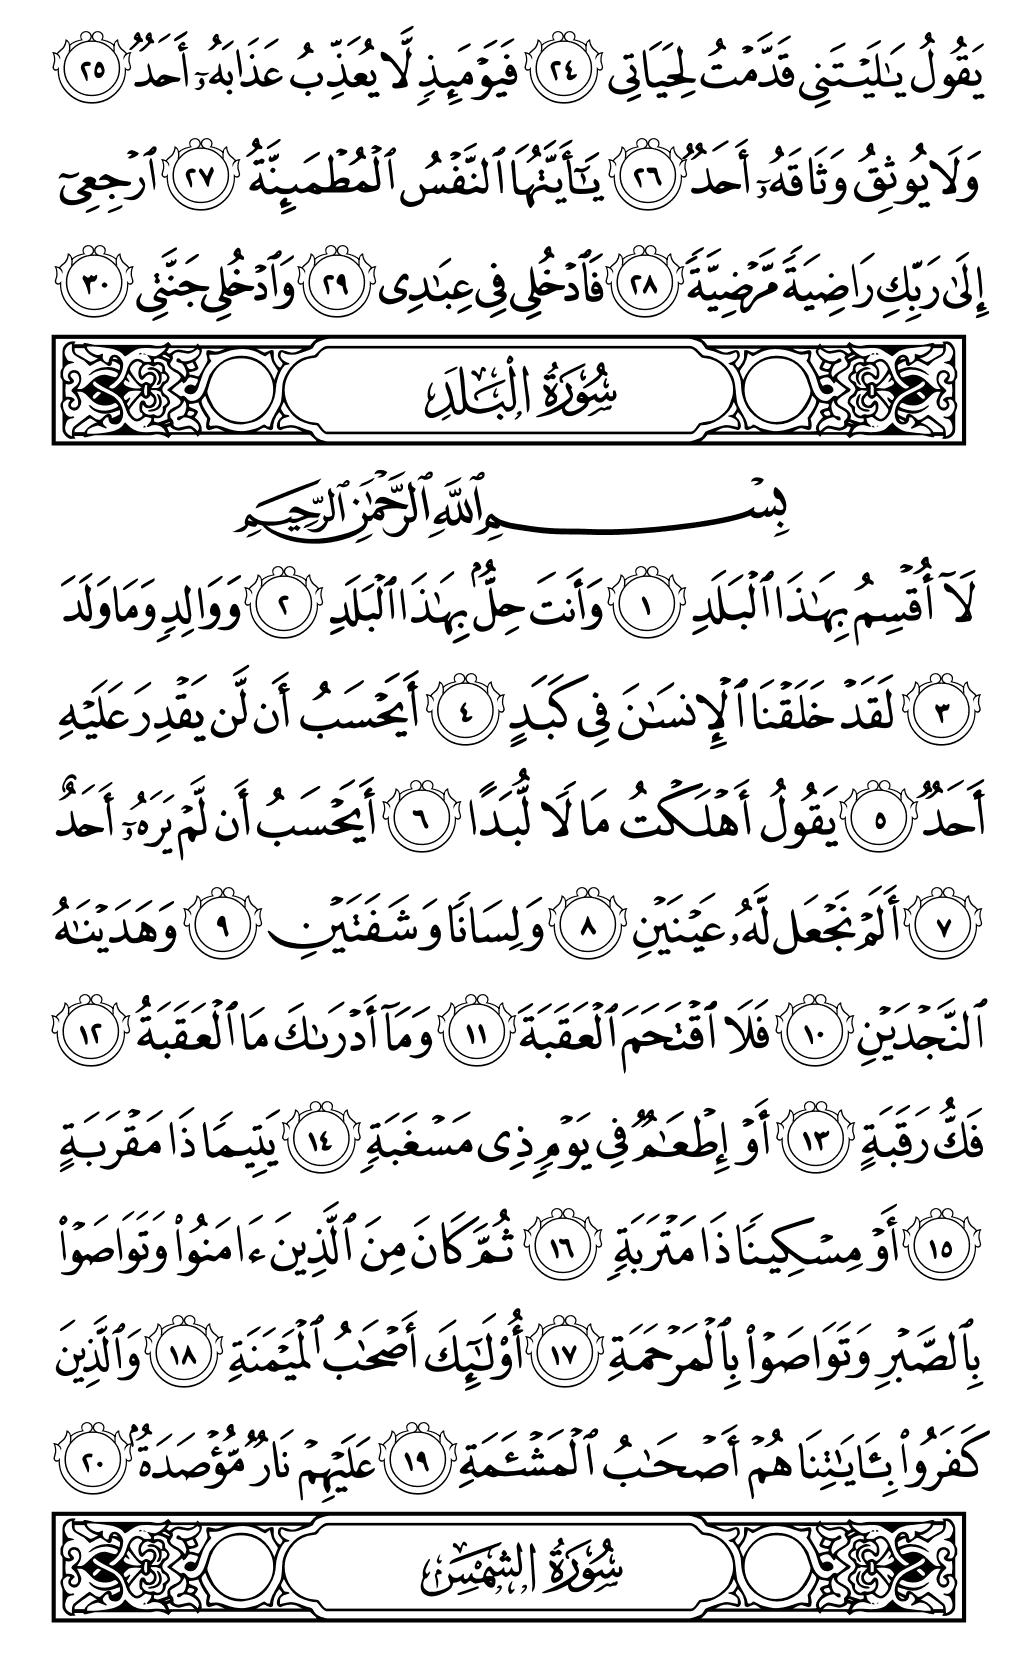 الصفحة رقم 594 من القرآن الكريم